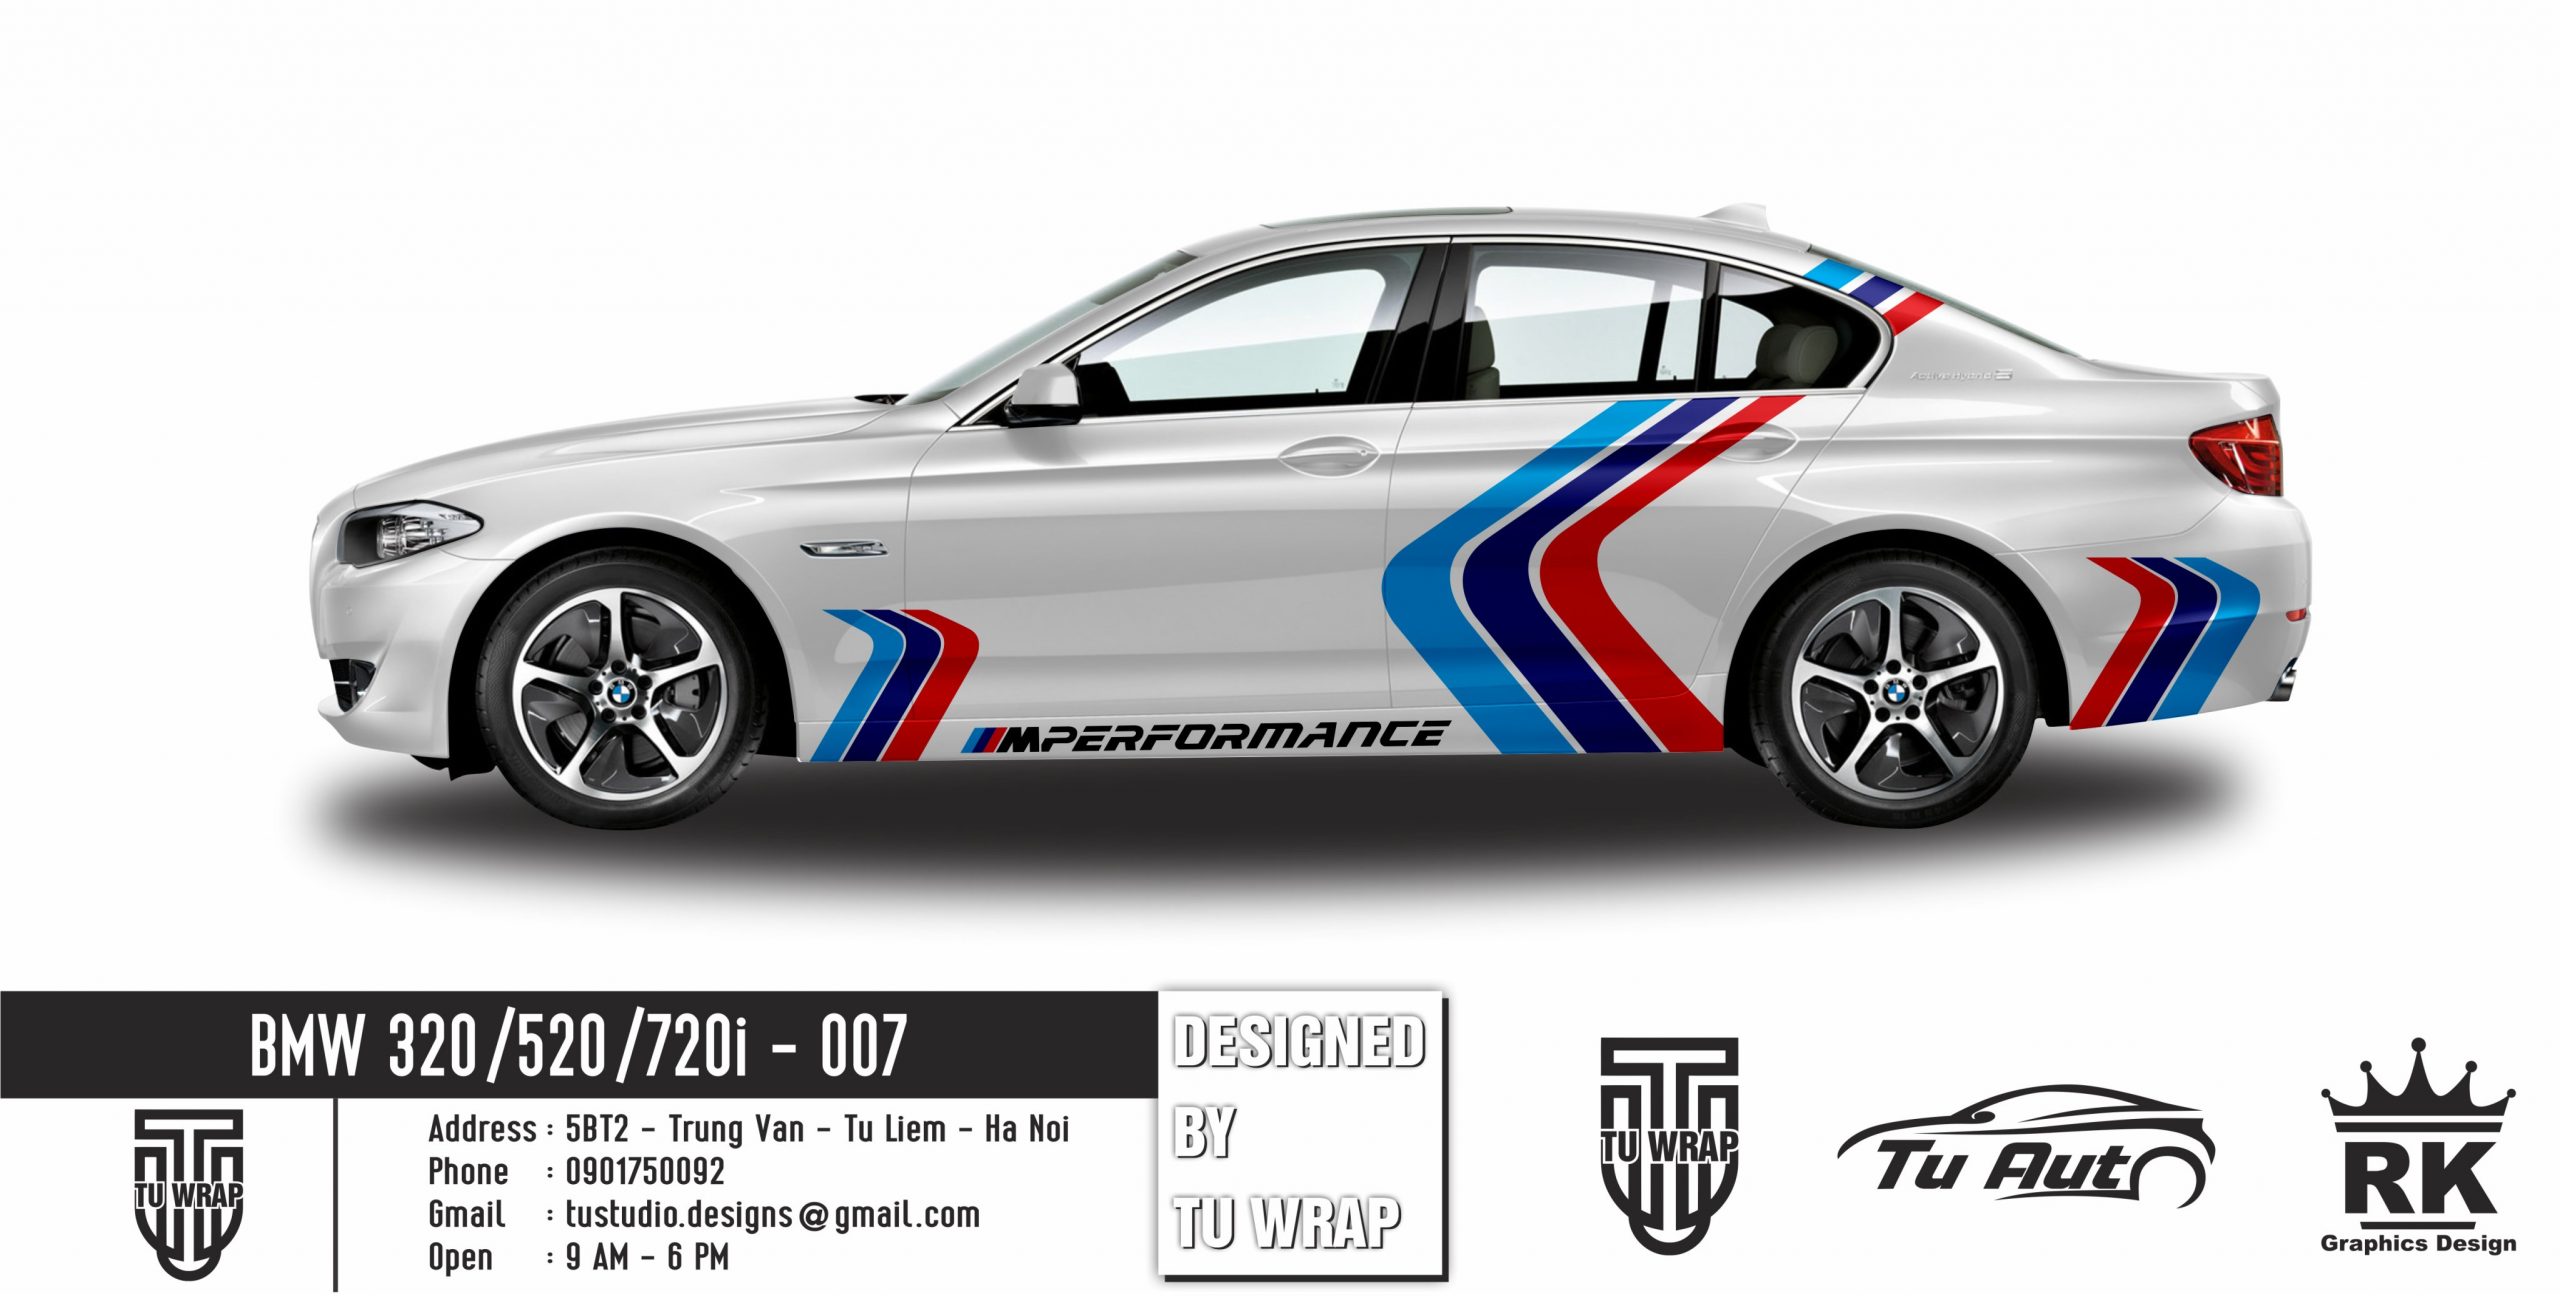 The all new BMW 7 Series giá từ 52 tỷ đồng chính thức trình làng tại Việt  Nam